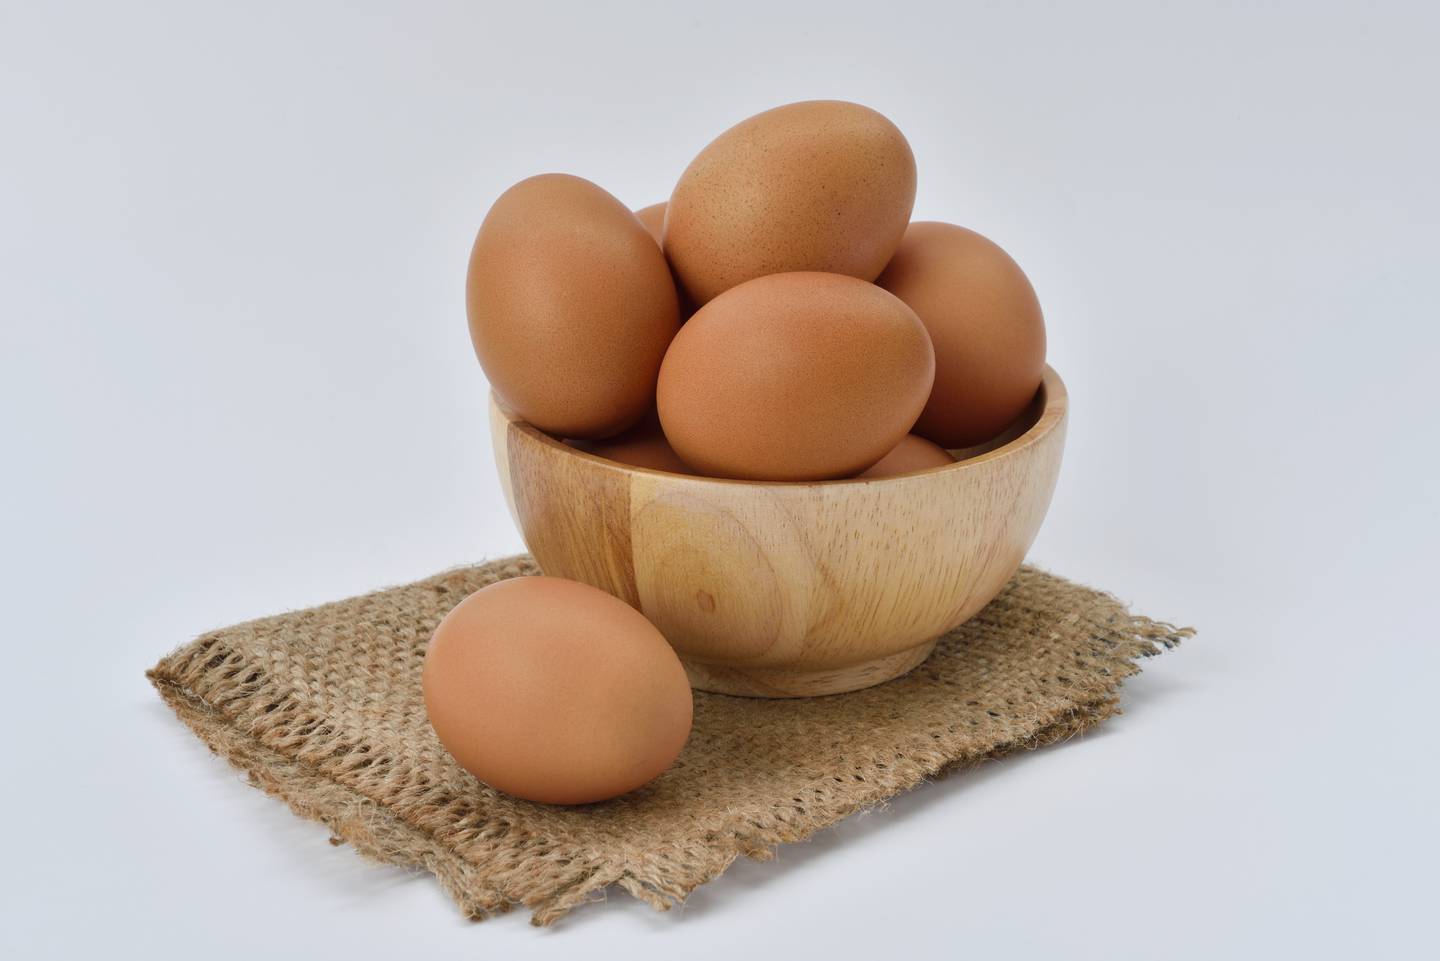 La cubeta de huevos se dispara y se vende hasta en 5 dólare